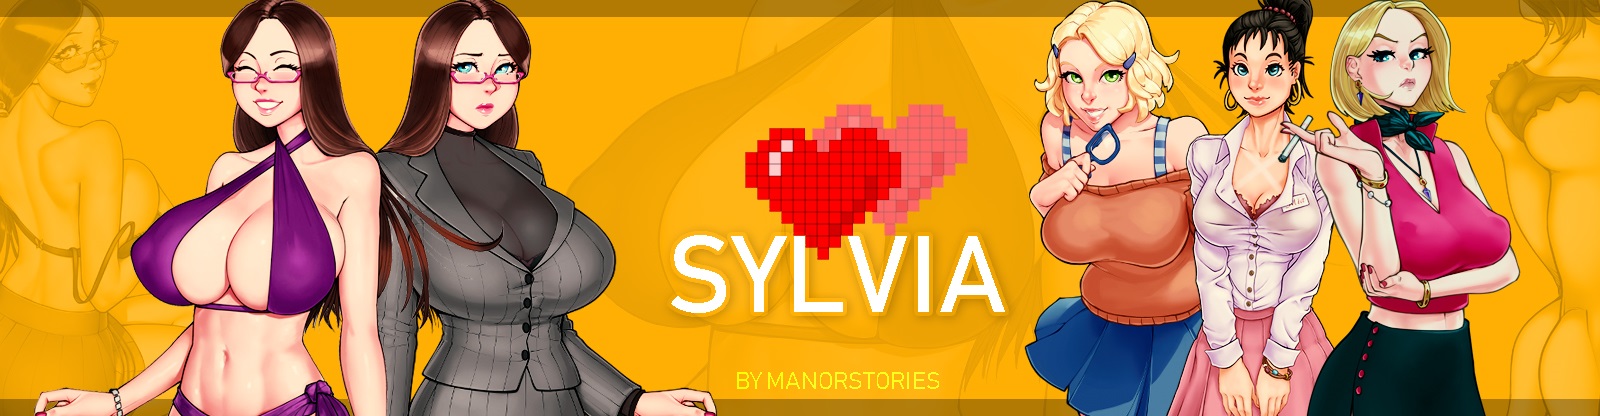 Manor Stories - Sylvia - Version 2019-02